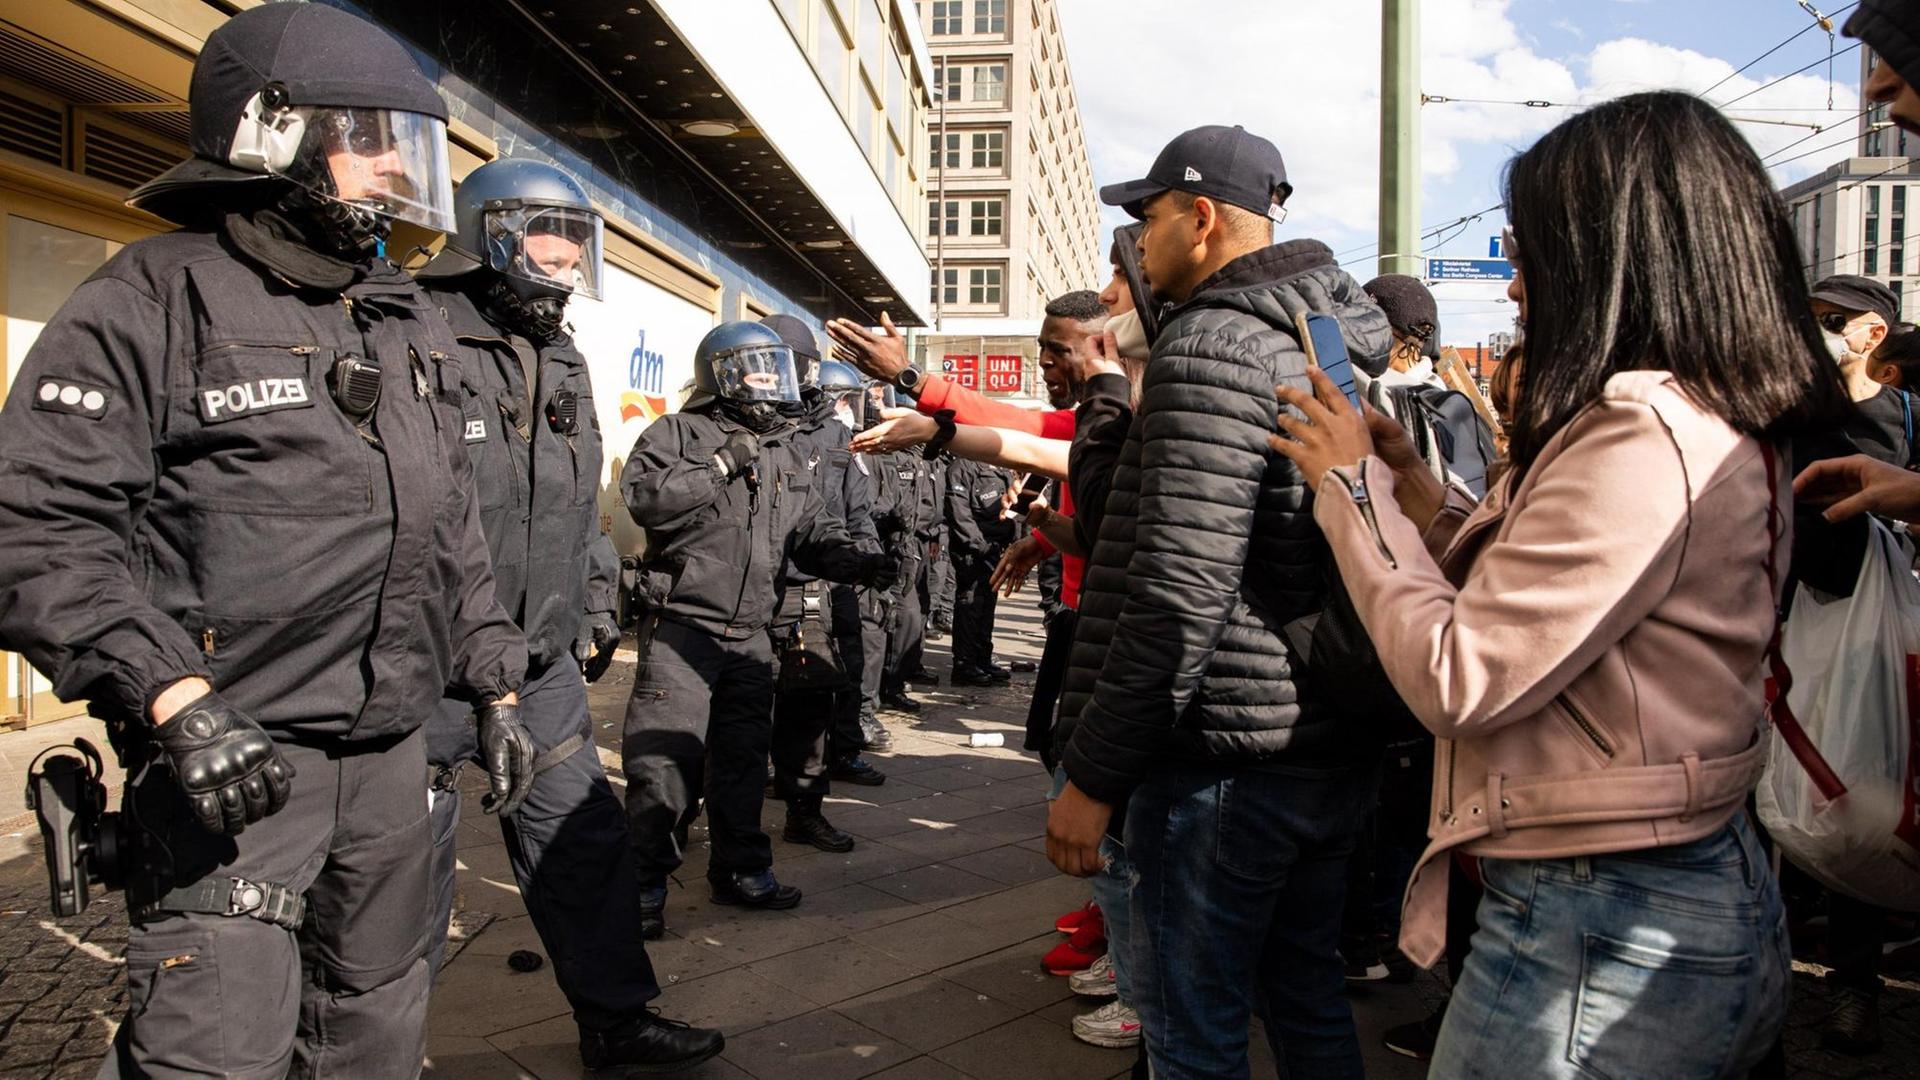 Polizisten und schwarze Demonstranten stehen sich in Berlin gegenüber.